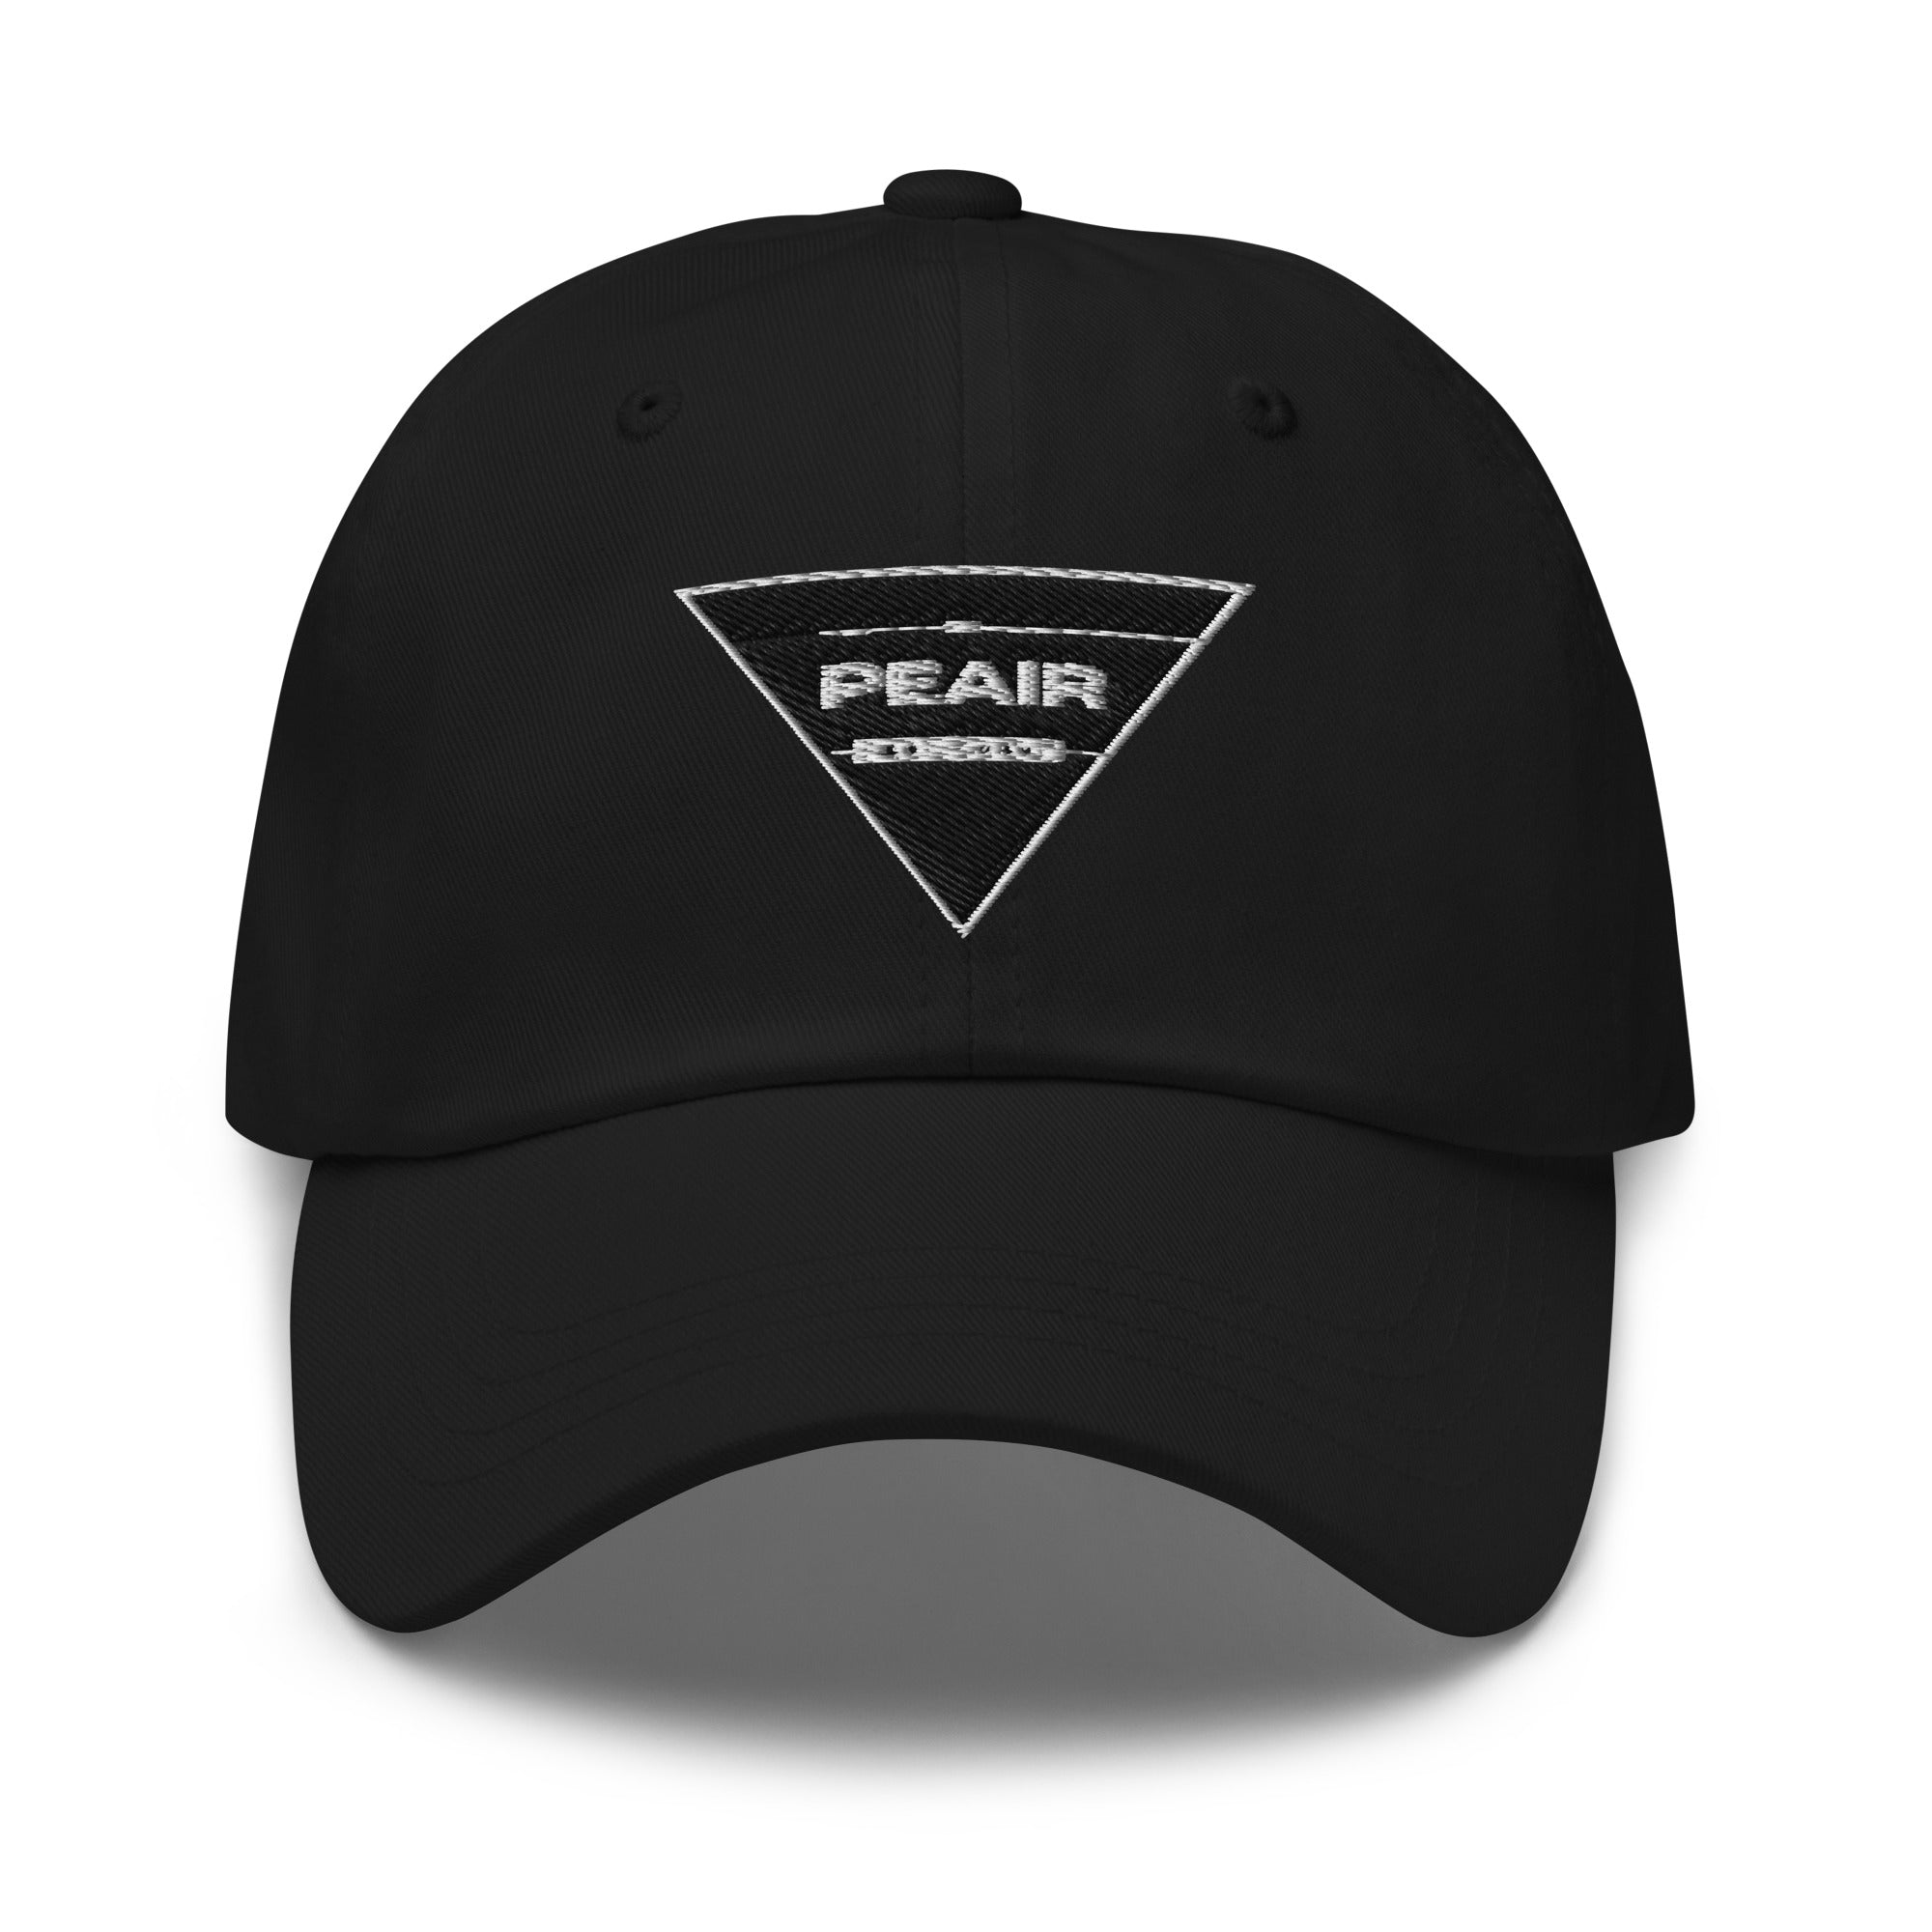 Peair - Dad hat